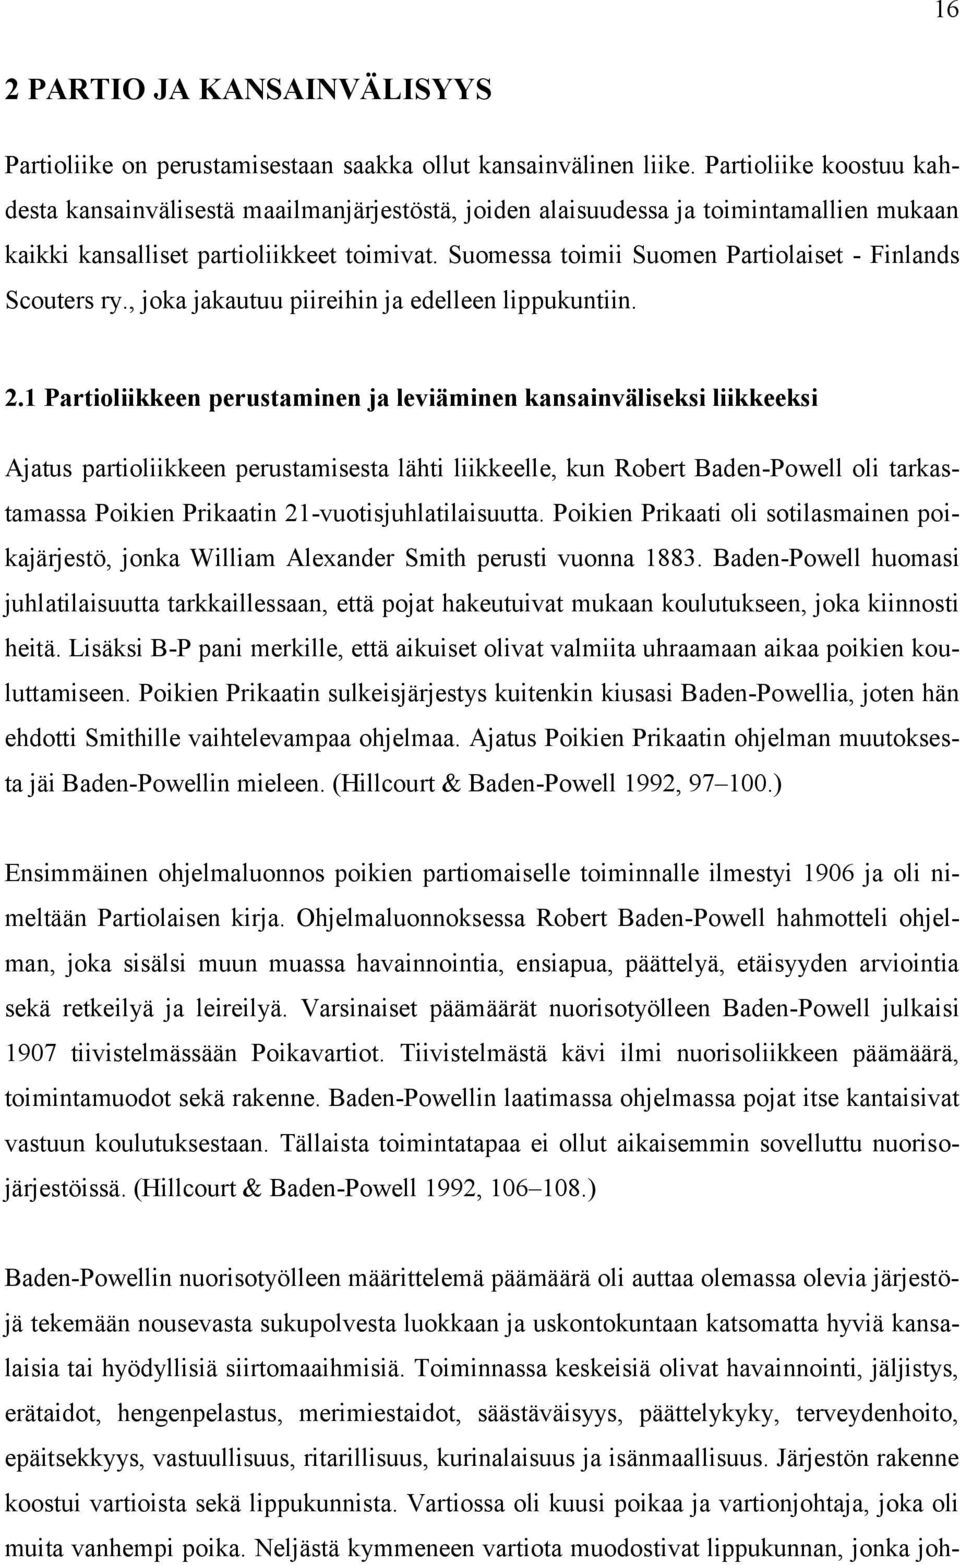 Suomessa toimii Suomen Partiolaiset - Finlands Scouters ry., joka jakautuu piireihin ja edelleen lippukuntiin. 2.